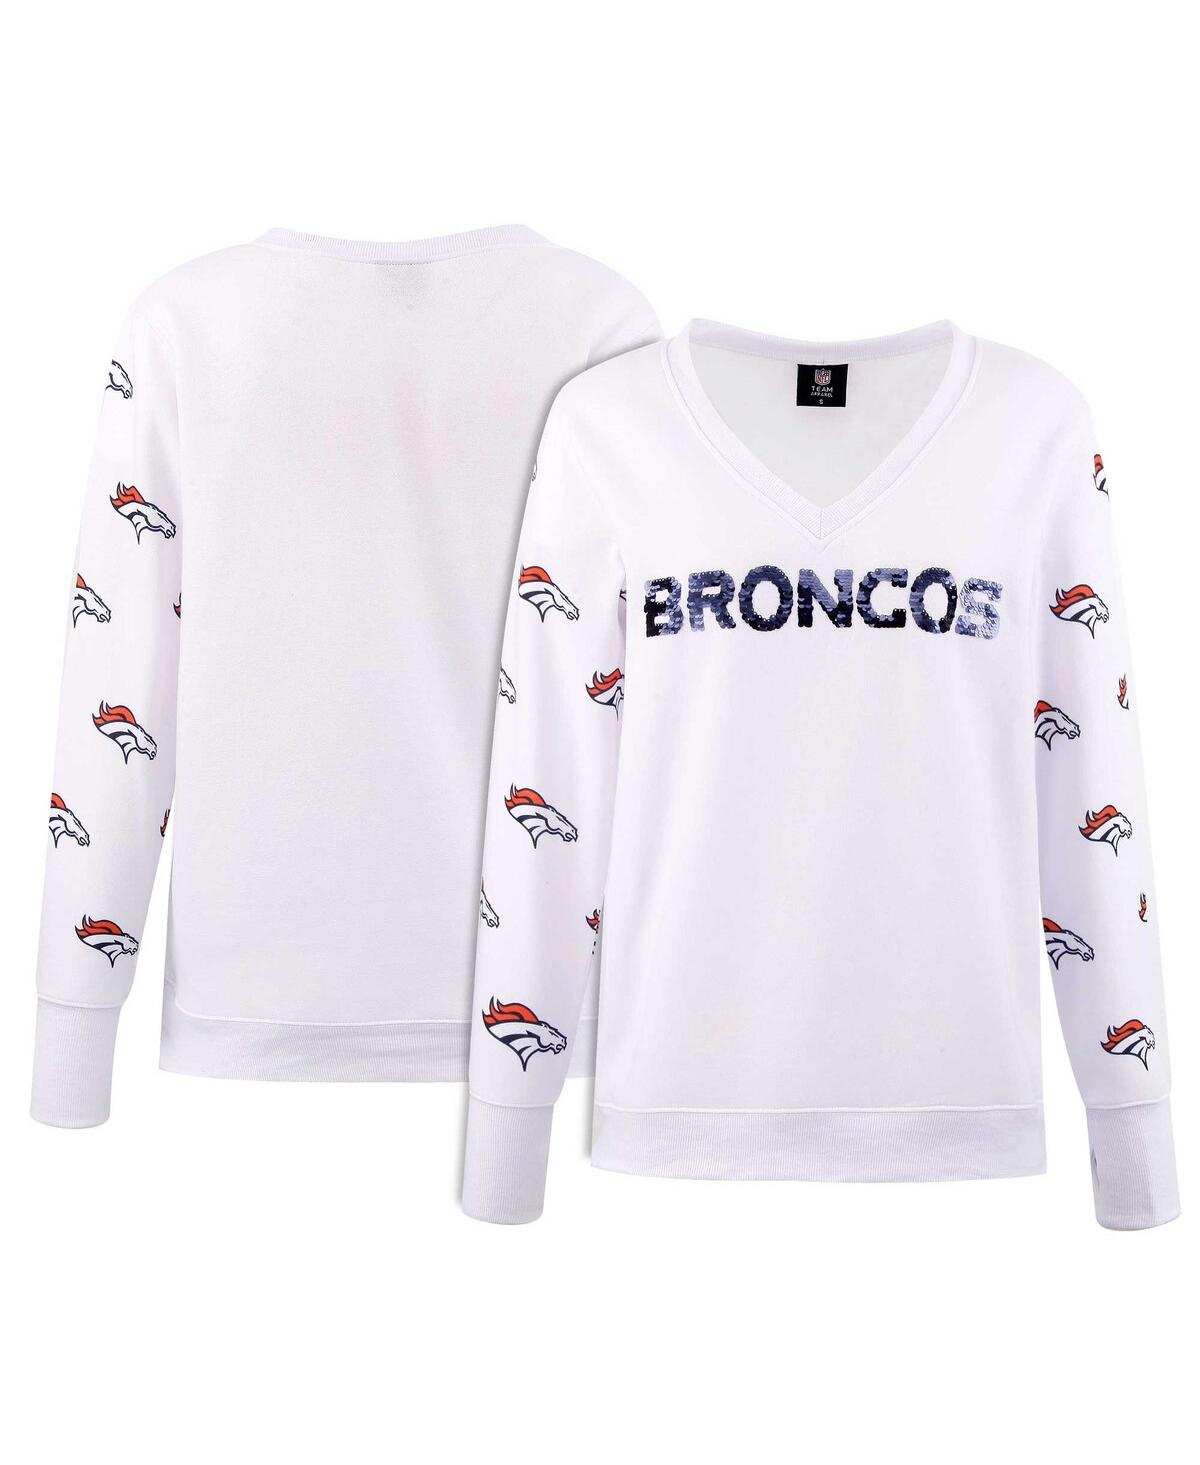 Women's Cuce White Denver Broncos Sequin Fleece V-Neck T-shirt - White